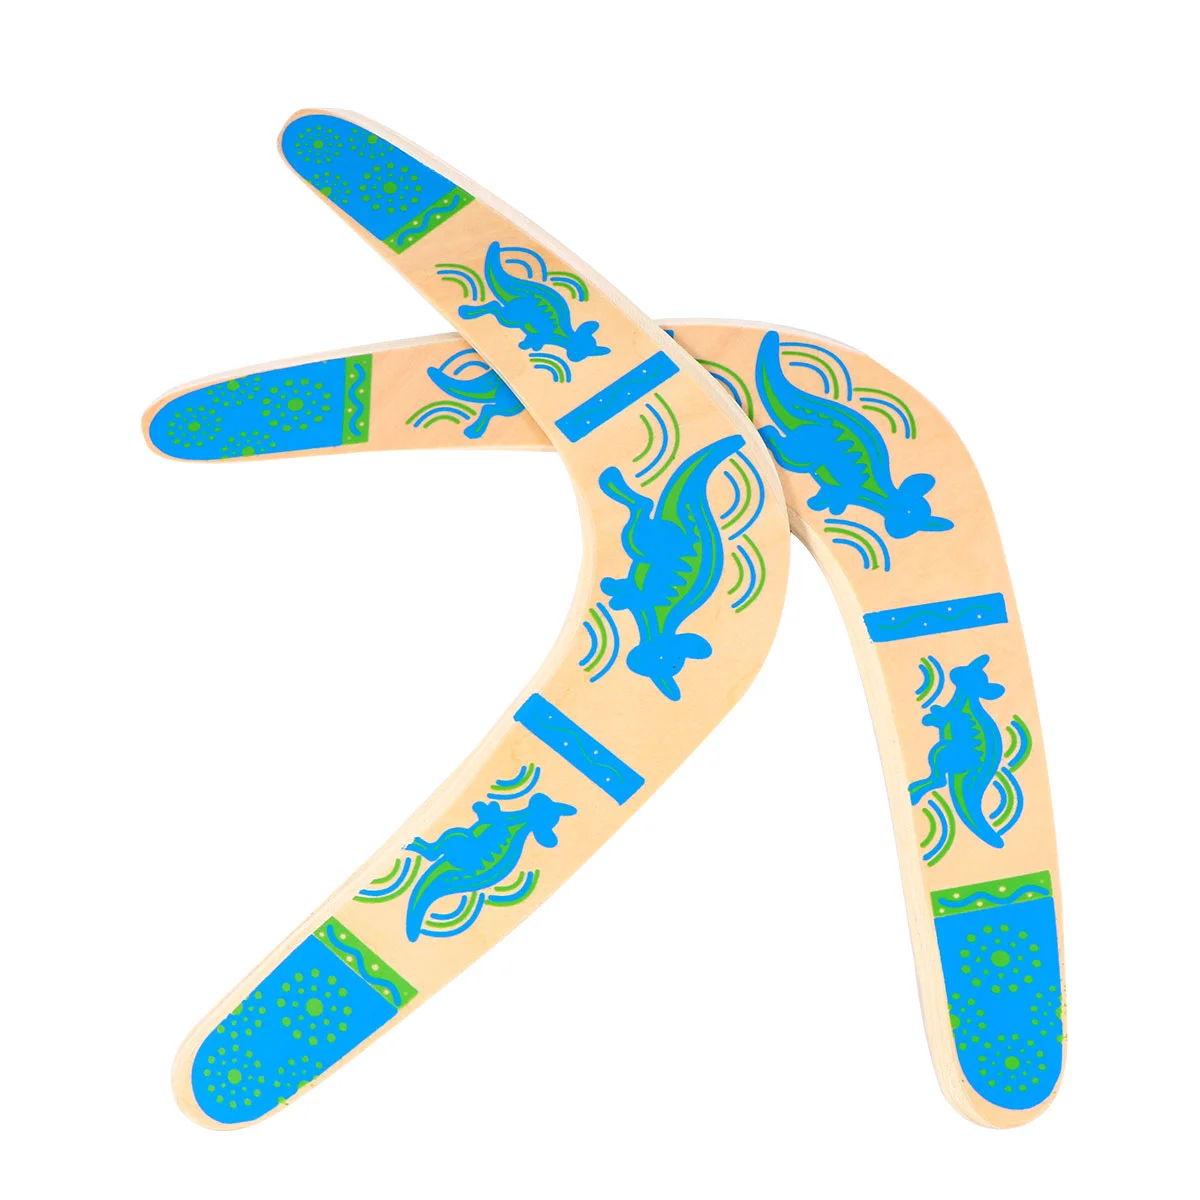 

2 шт. Boomerang деревянный безопасный возвращающийся бумеранг, игрушки для отдыха, детская игрушка для игр на открытом воздухе, Семейная Игра на день рождения для детей (синий)